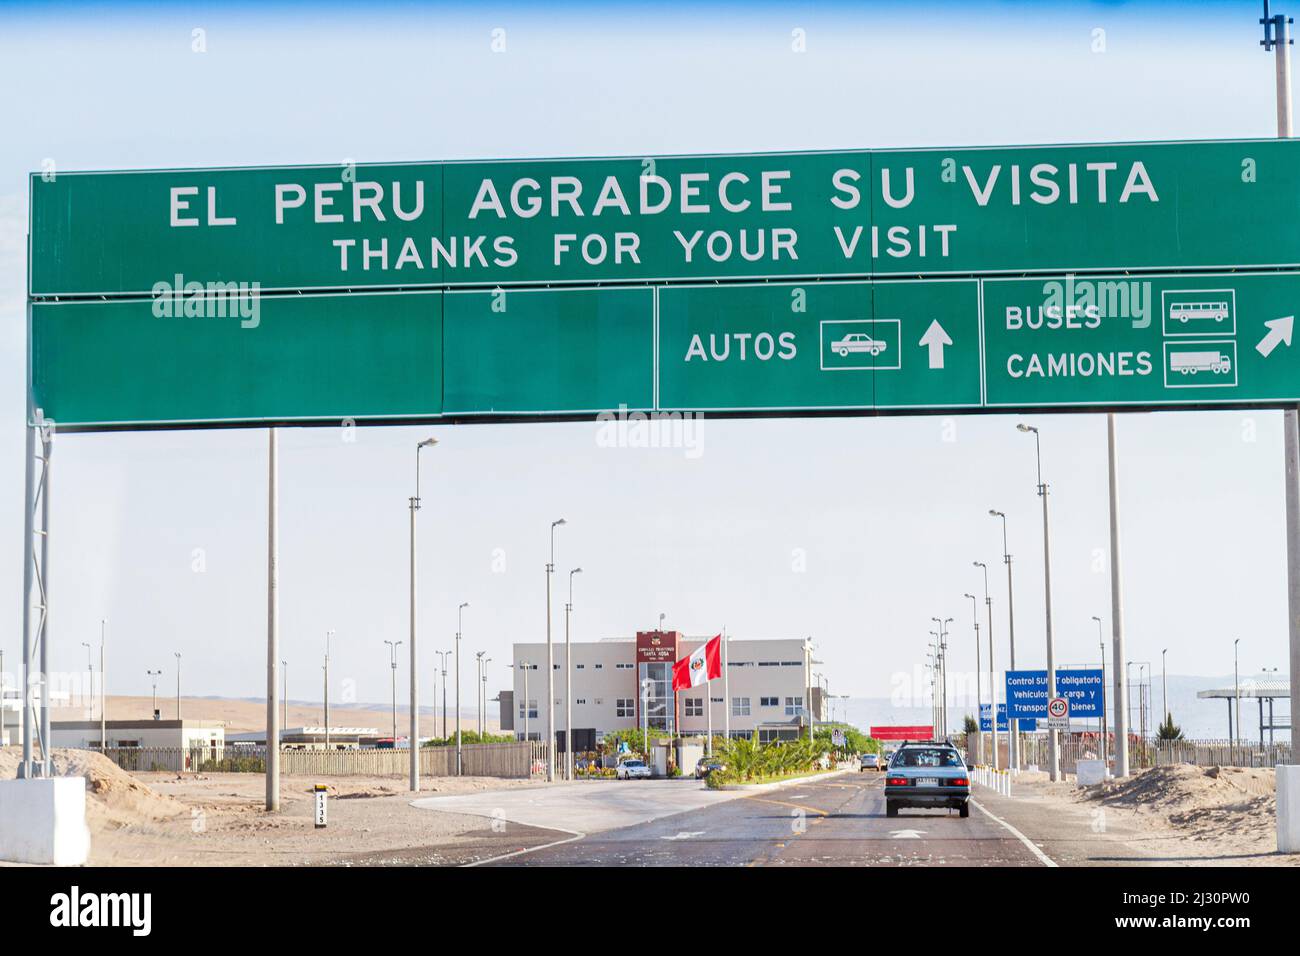 Tacna Peru, Pan American Highway, Annäherung an die chilenische Grenze, Überquerung Checkpoint, Highway, Schild Spanisch Englisch bilingual thanks for your visit Building Stockfoto